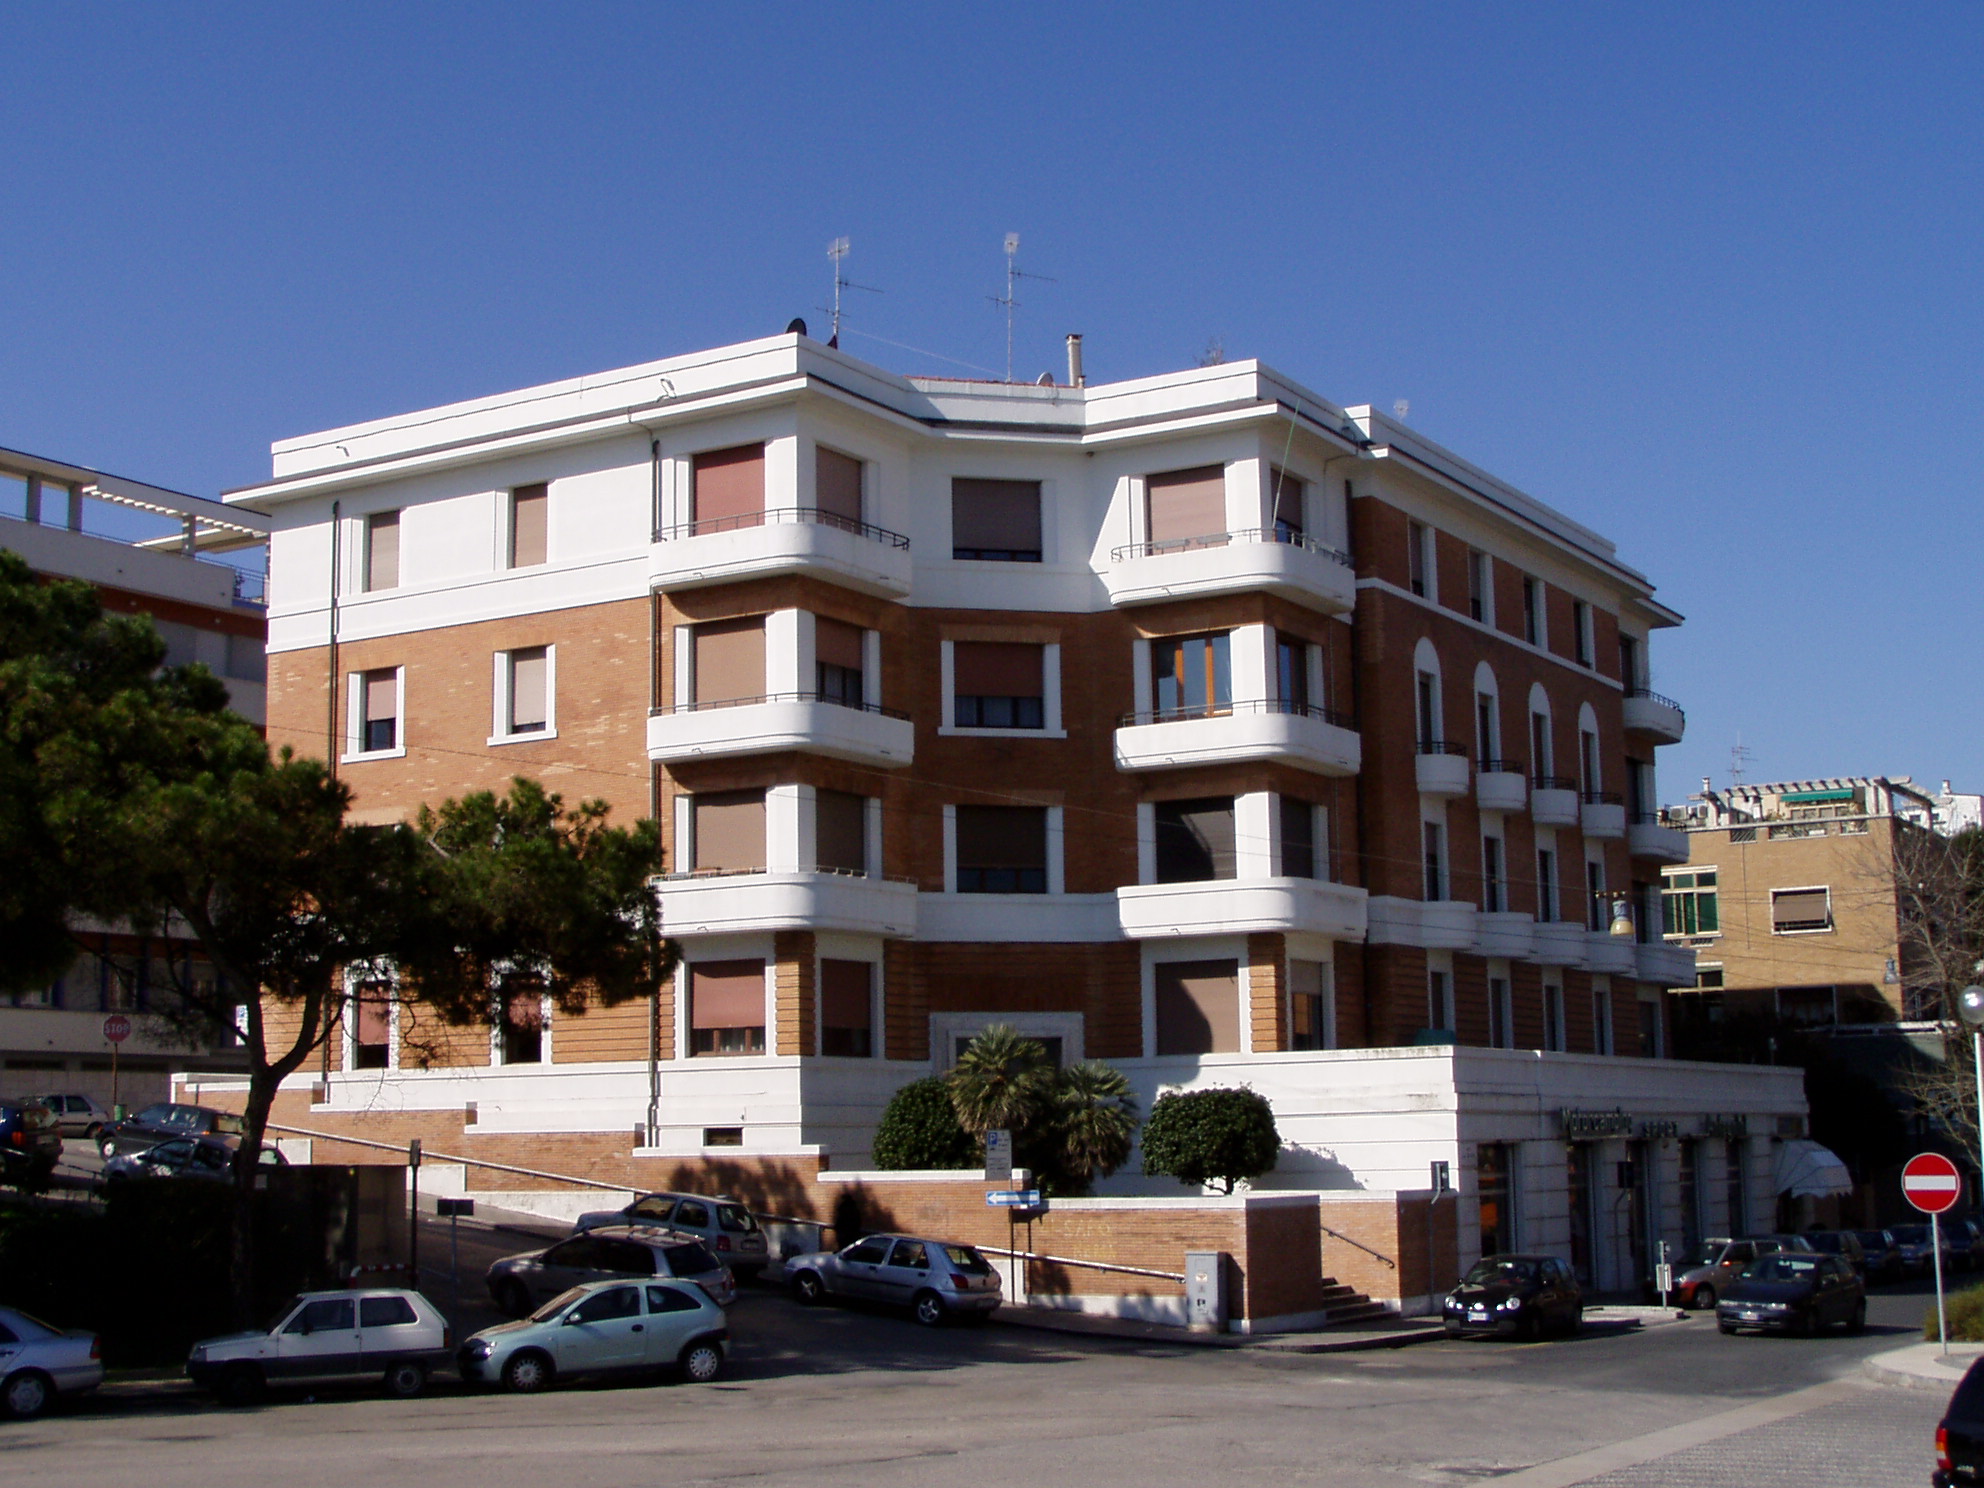 Palazzo in stile razionalista (palazzo) - Ancona (AN) 